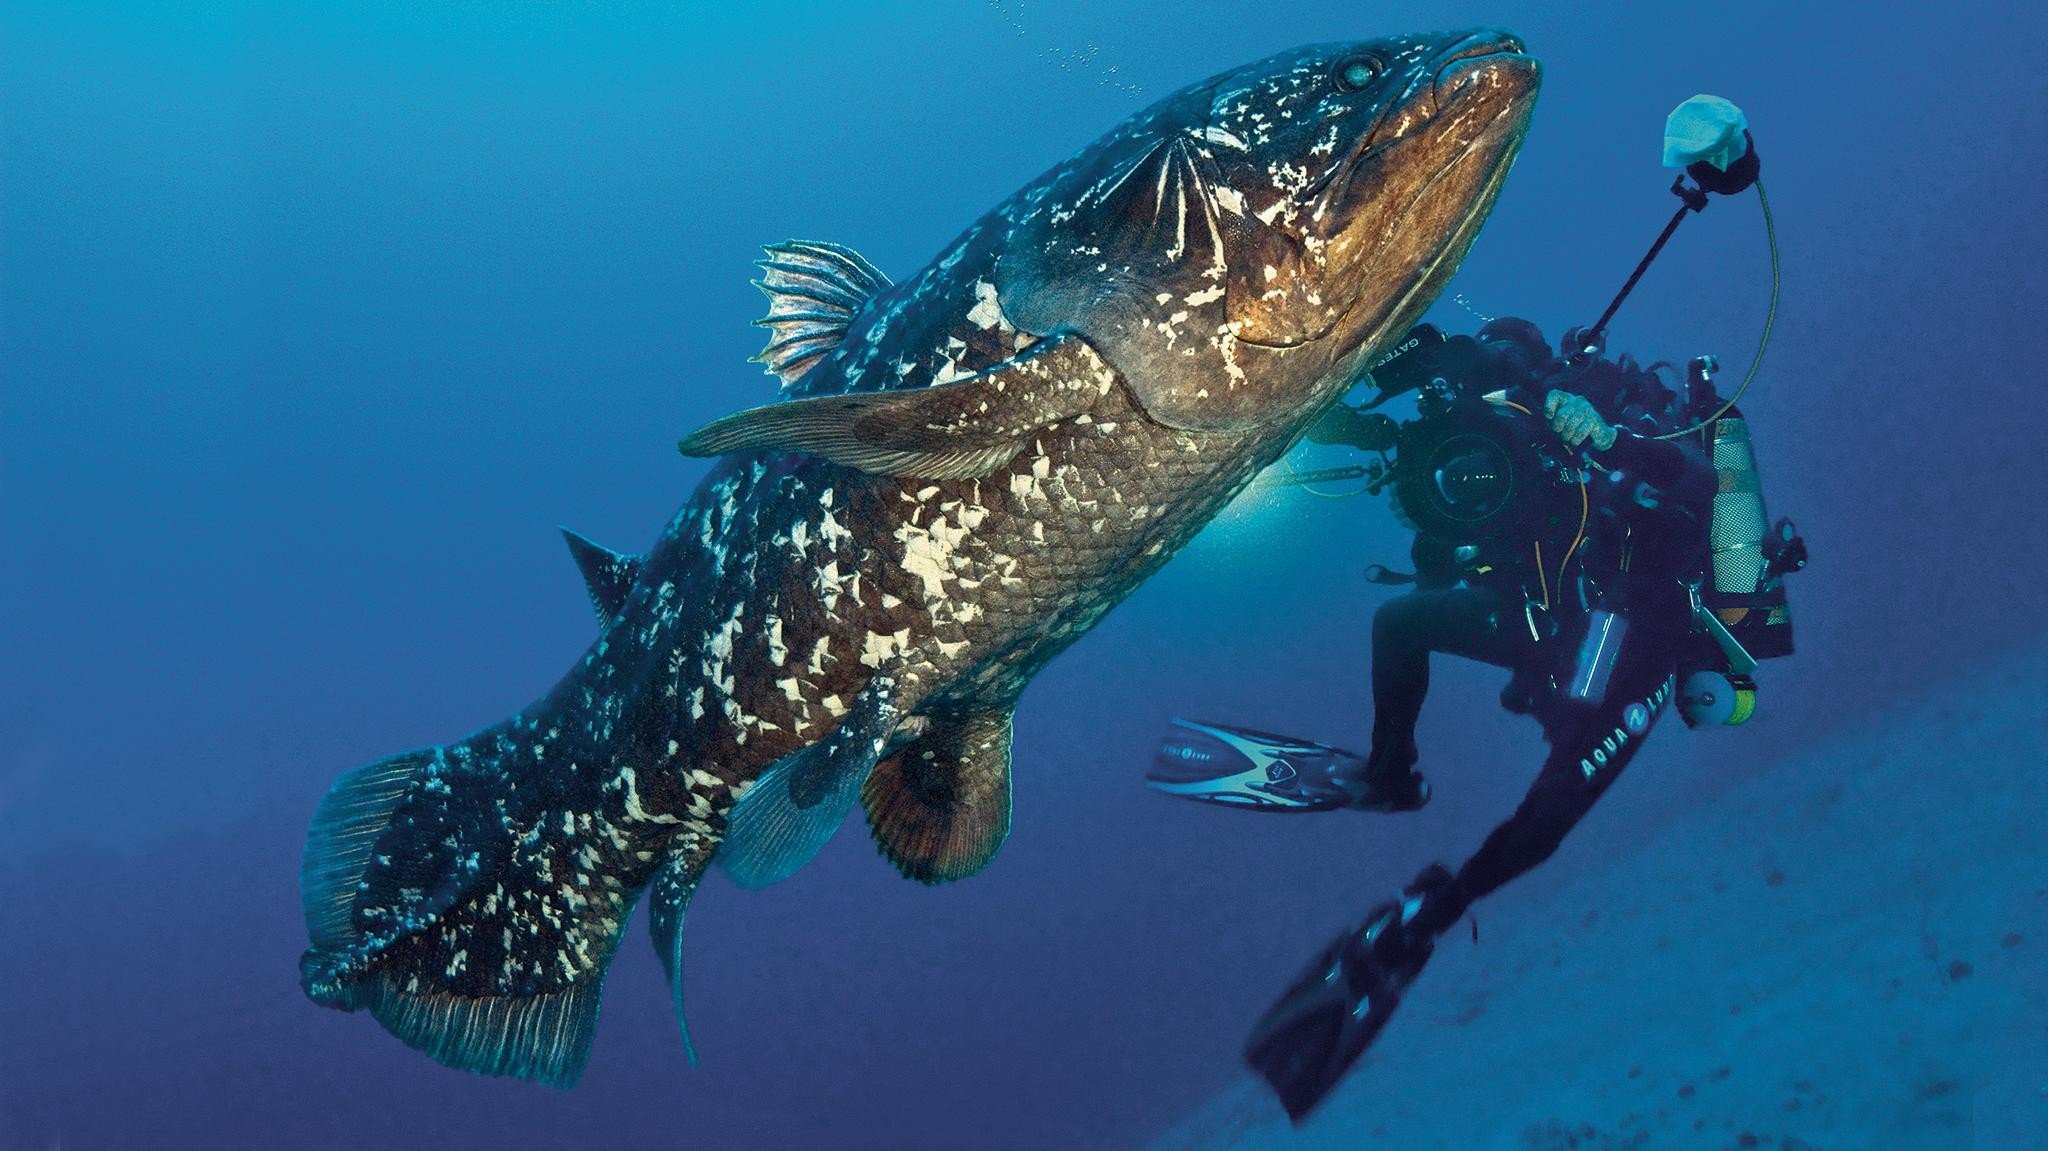 Ikan raja laut, Indonesian coelacanth, Latimeria menadoensis